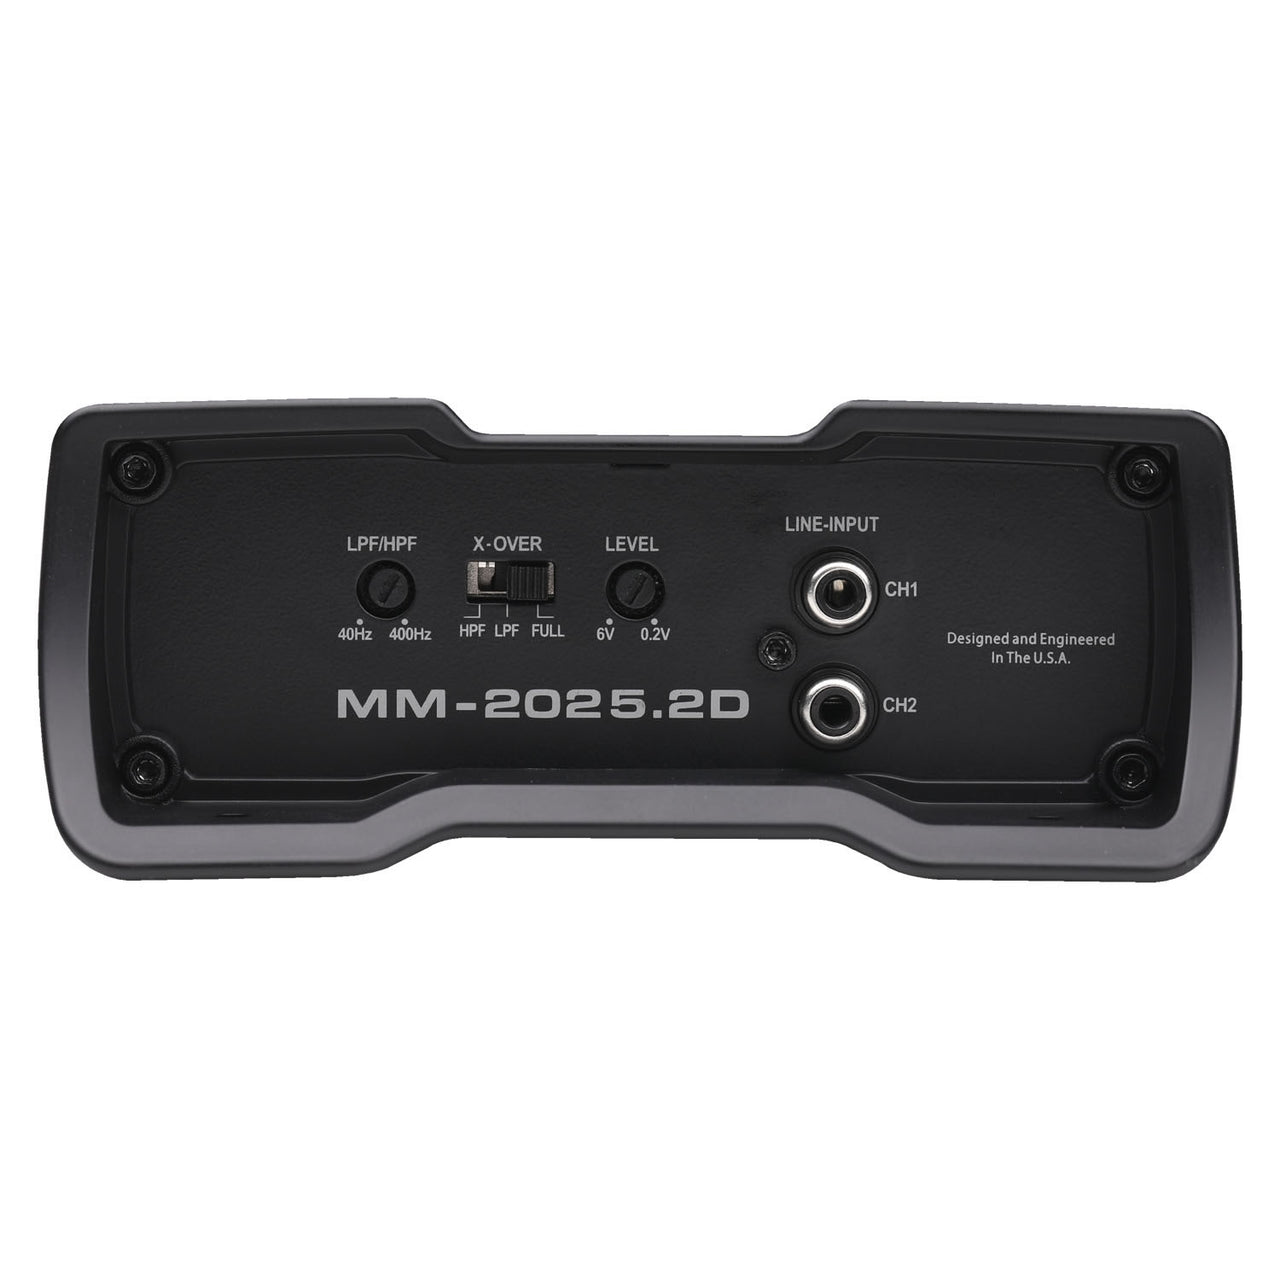 AUTOTEK MM-2025.2D  2000 Watt Compact Bridgeable 2 Channel Amplifier